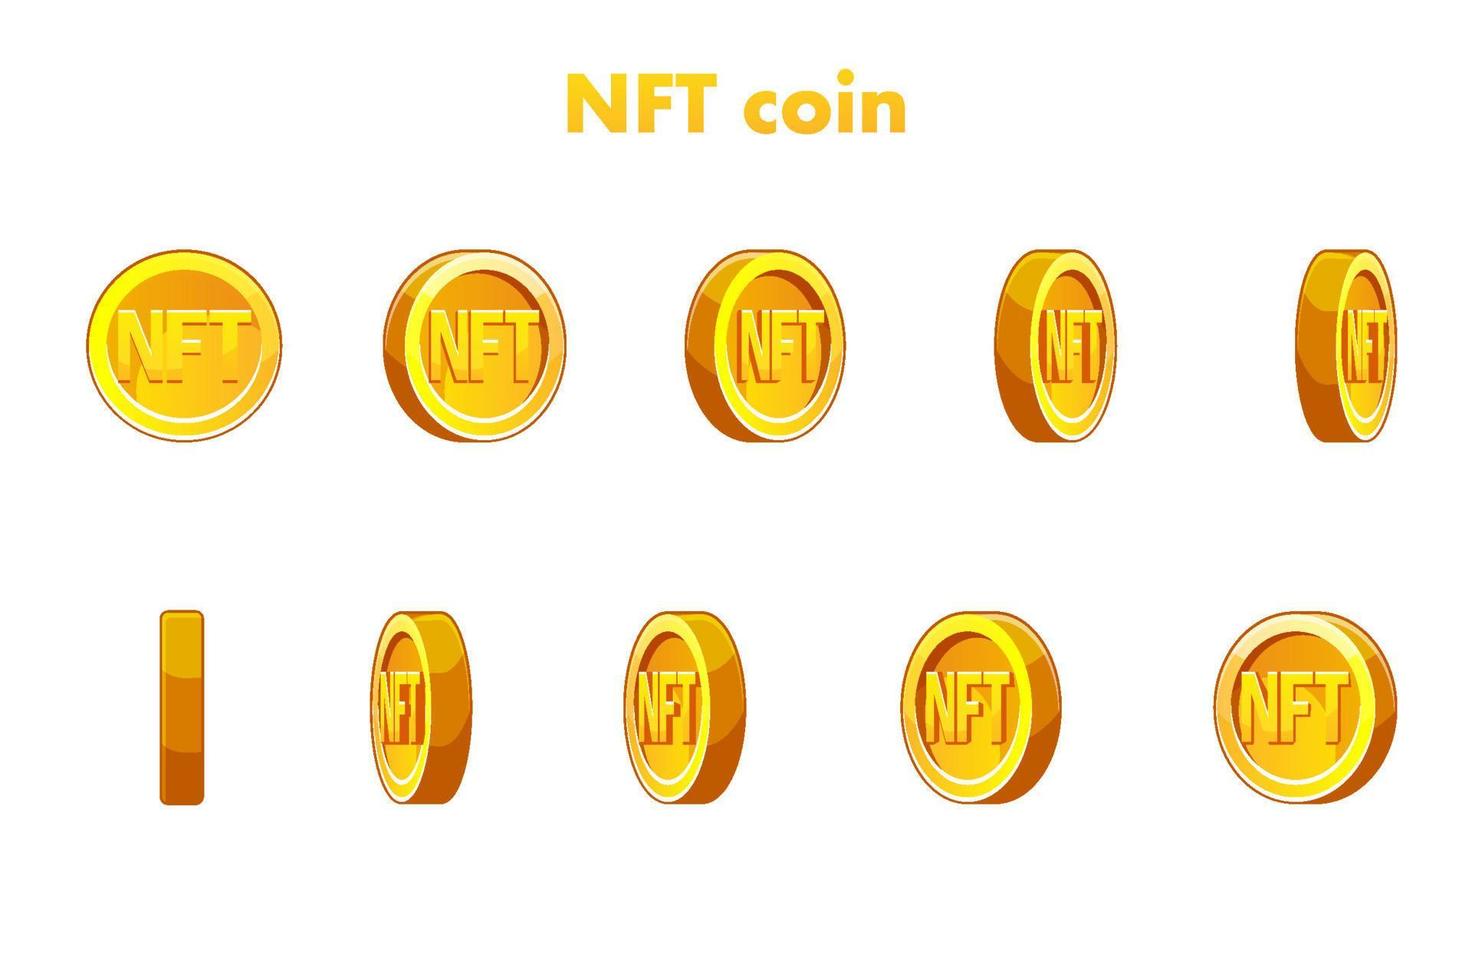 Vektor-Gold-NFT-Münze. Animation nft Coin, Schritt für Schritt. kryptowährung, nft-token internetwährung der zukunft vektor